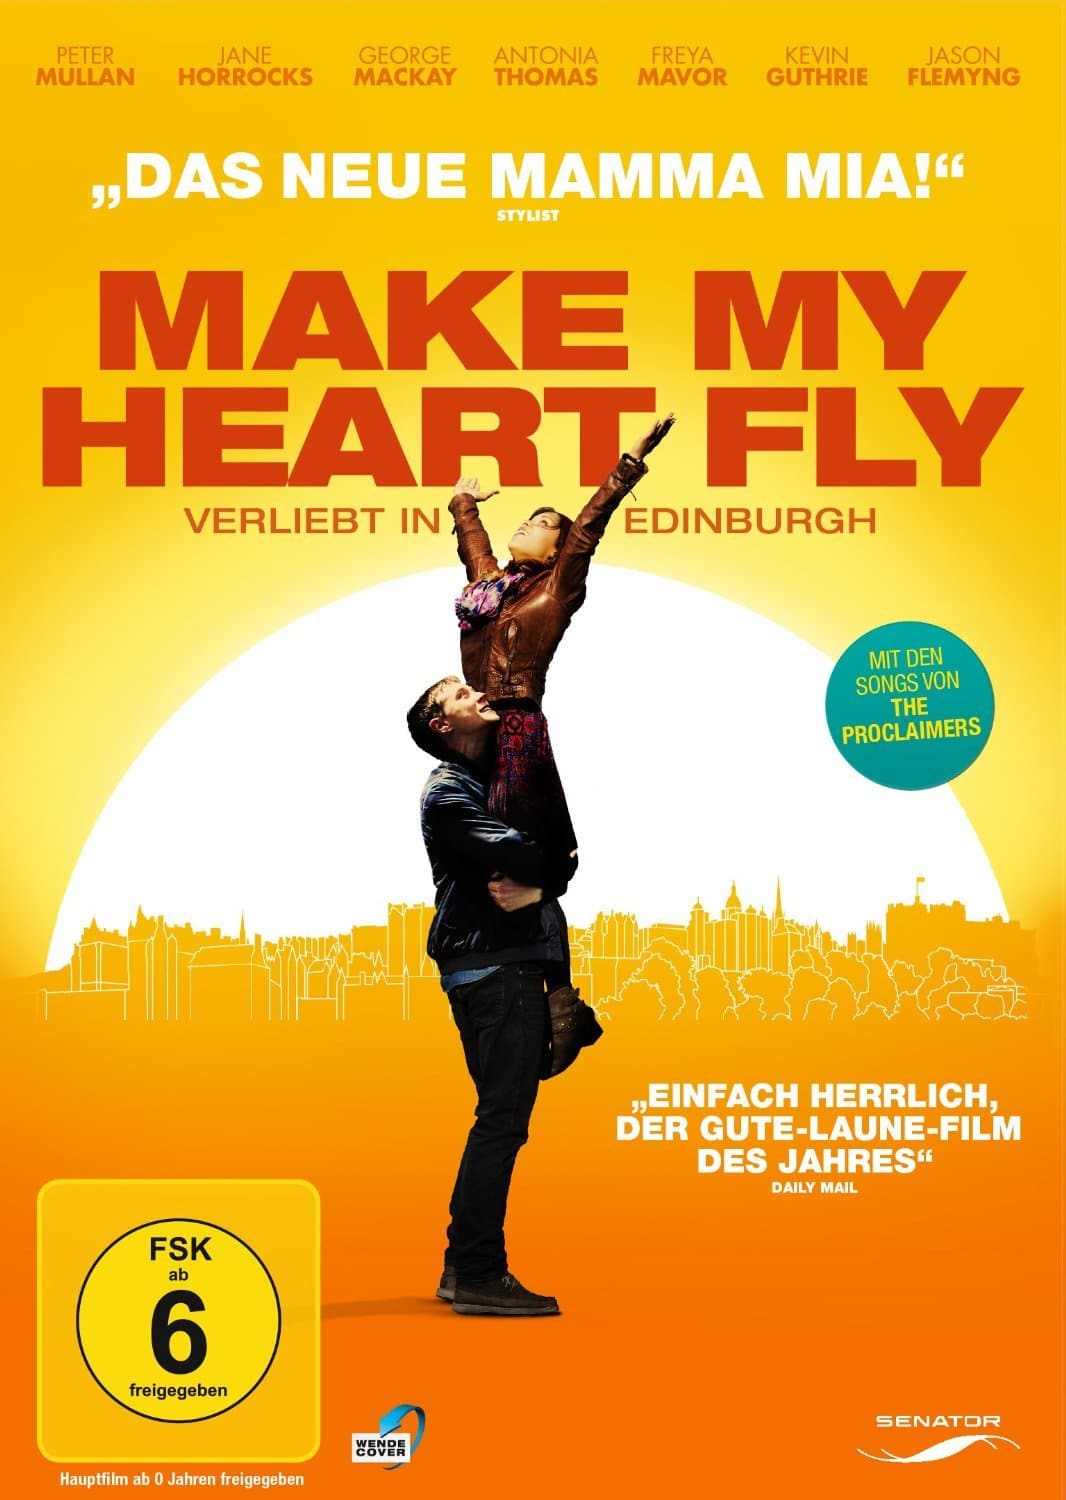 Plakat von "Make My Heart Fly - Verliebt in Edinburgh"